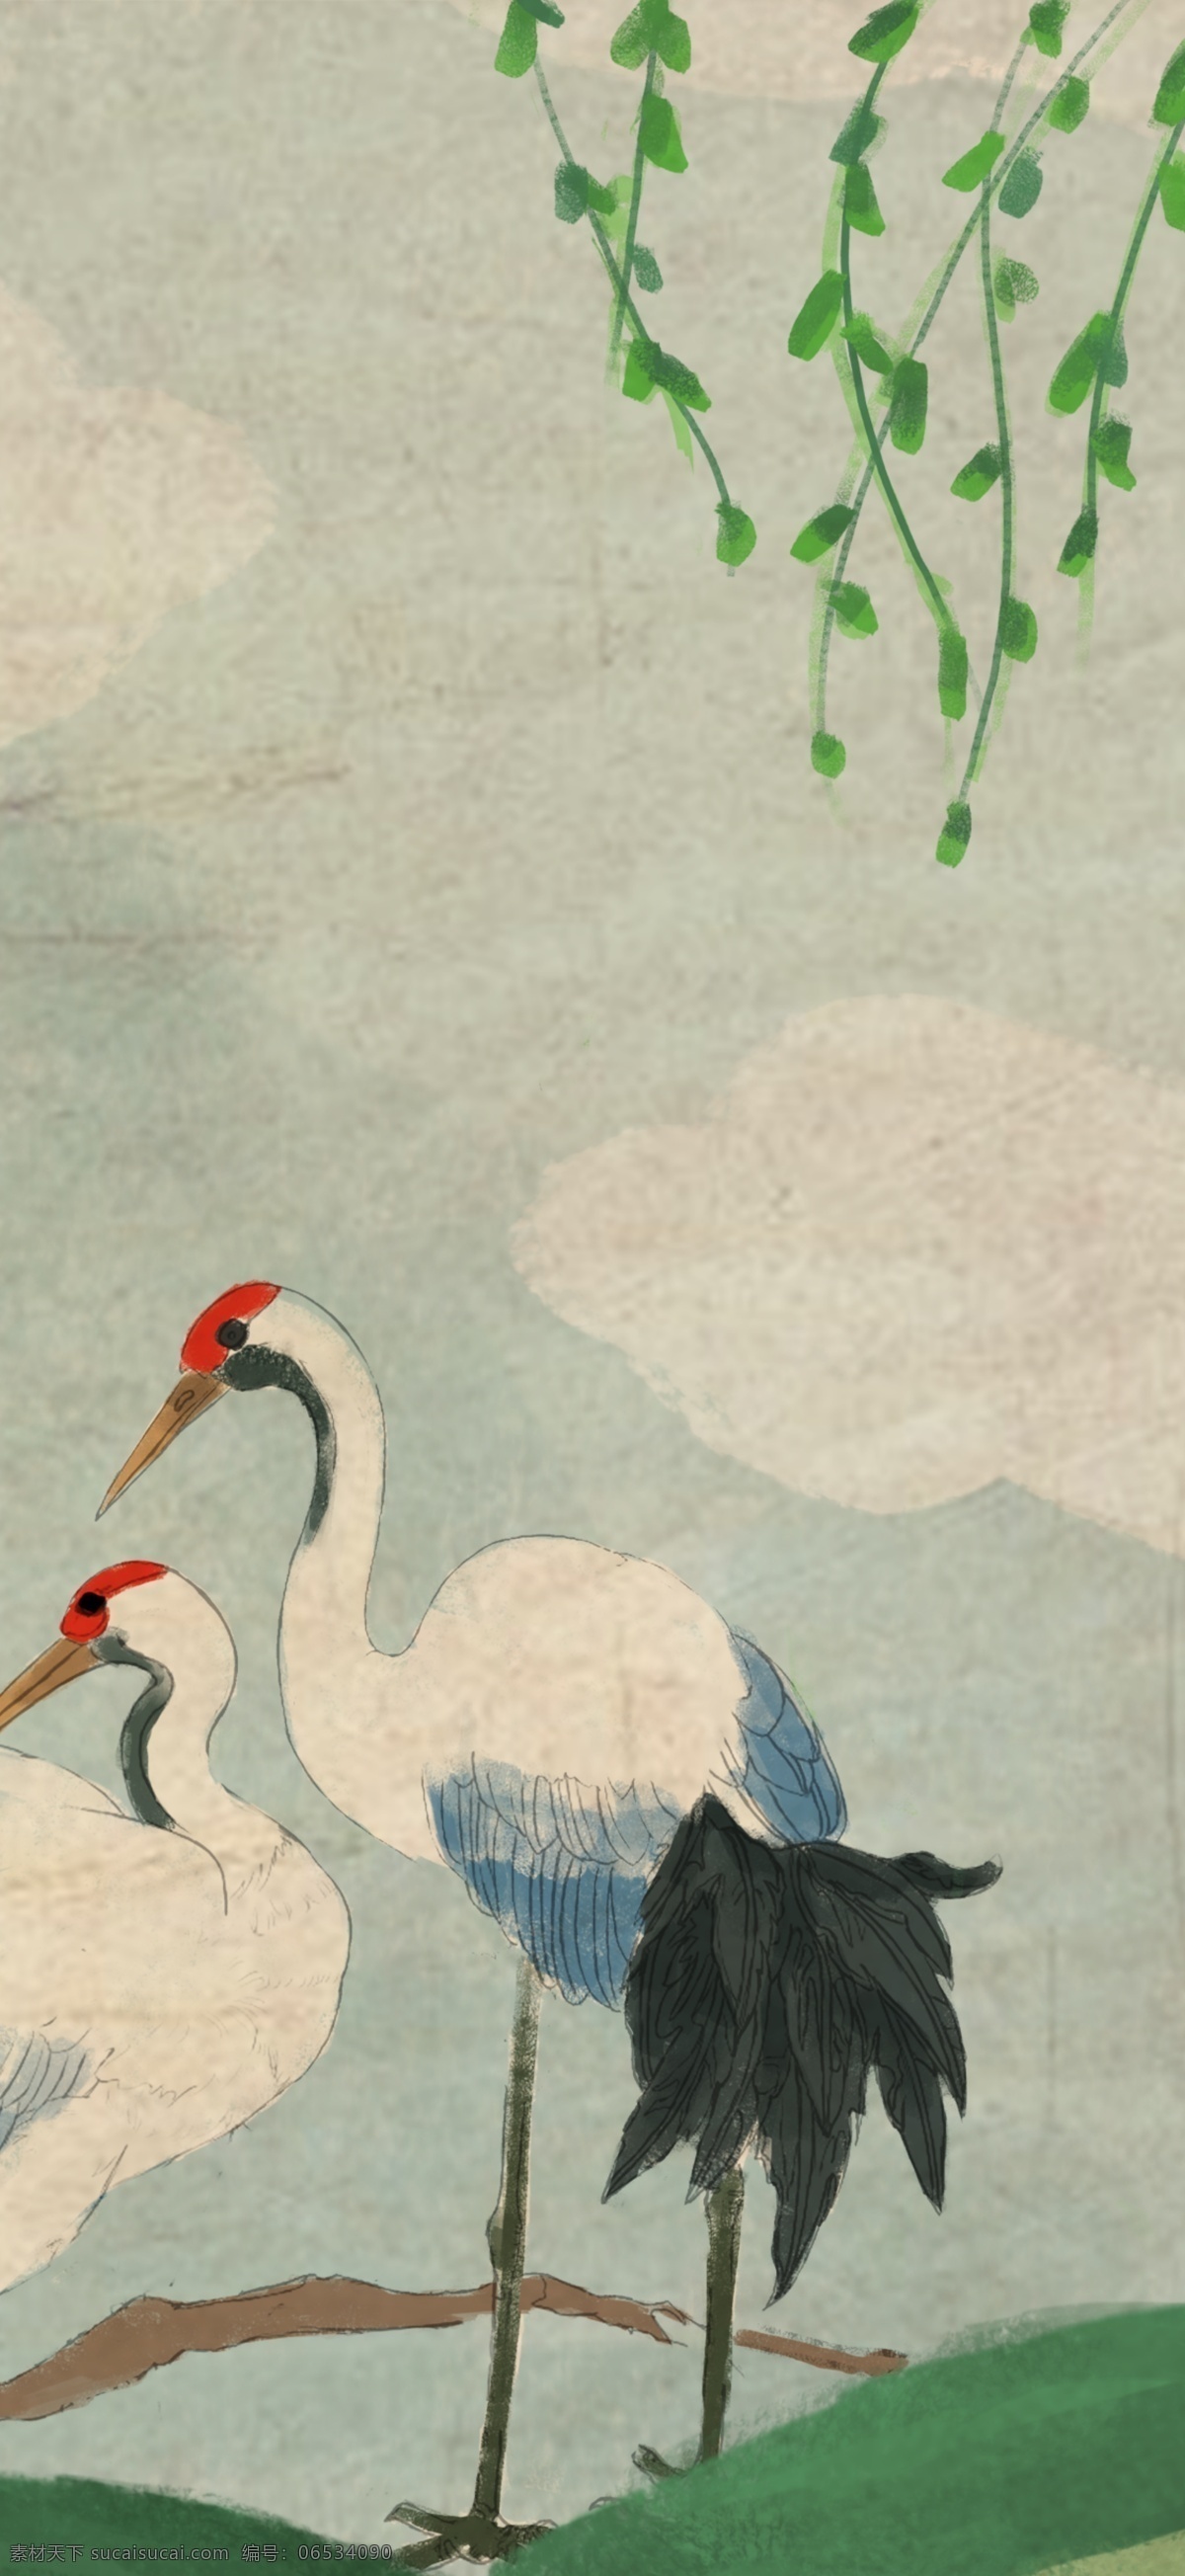 中国 风 白鹤 中国画 祥云 色彩 壁纸 桌面 花朵 古代画风 白鹤插画 仙鹤